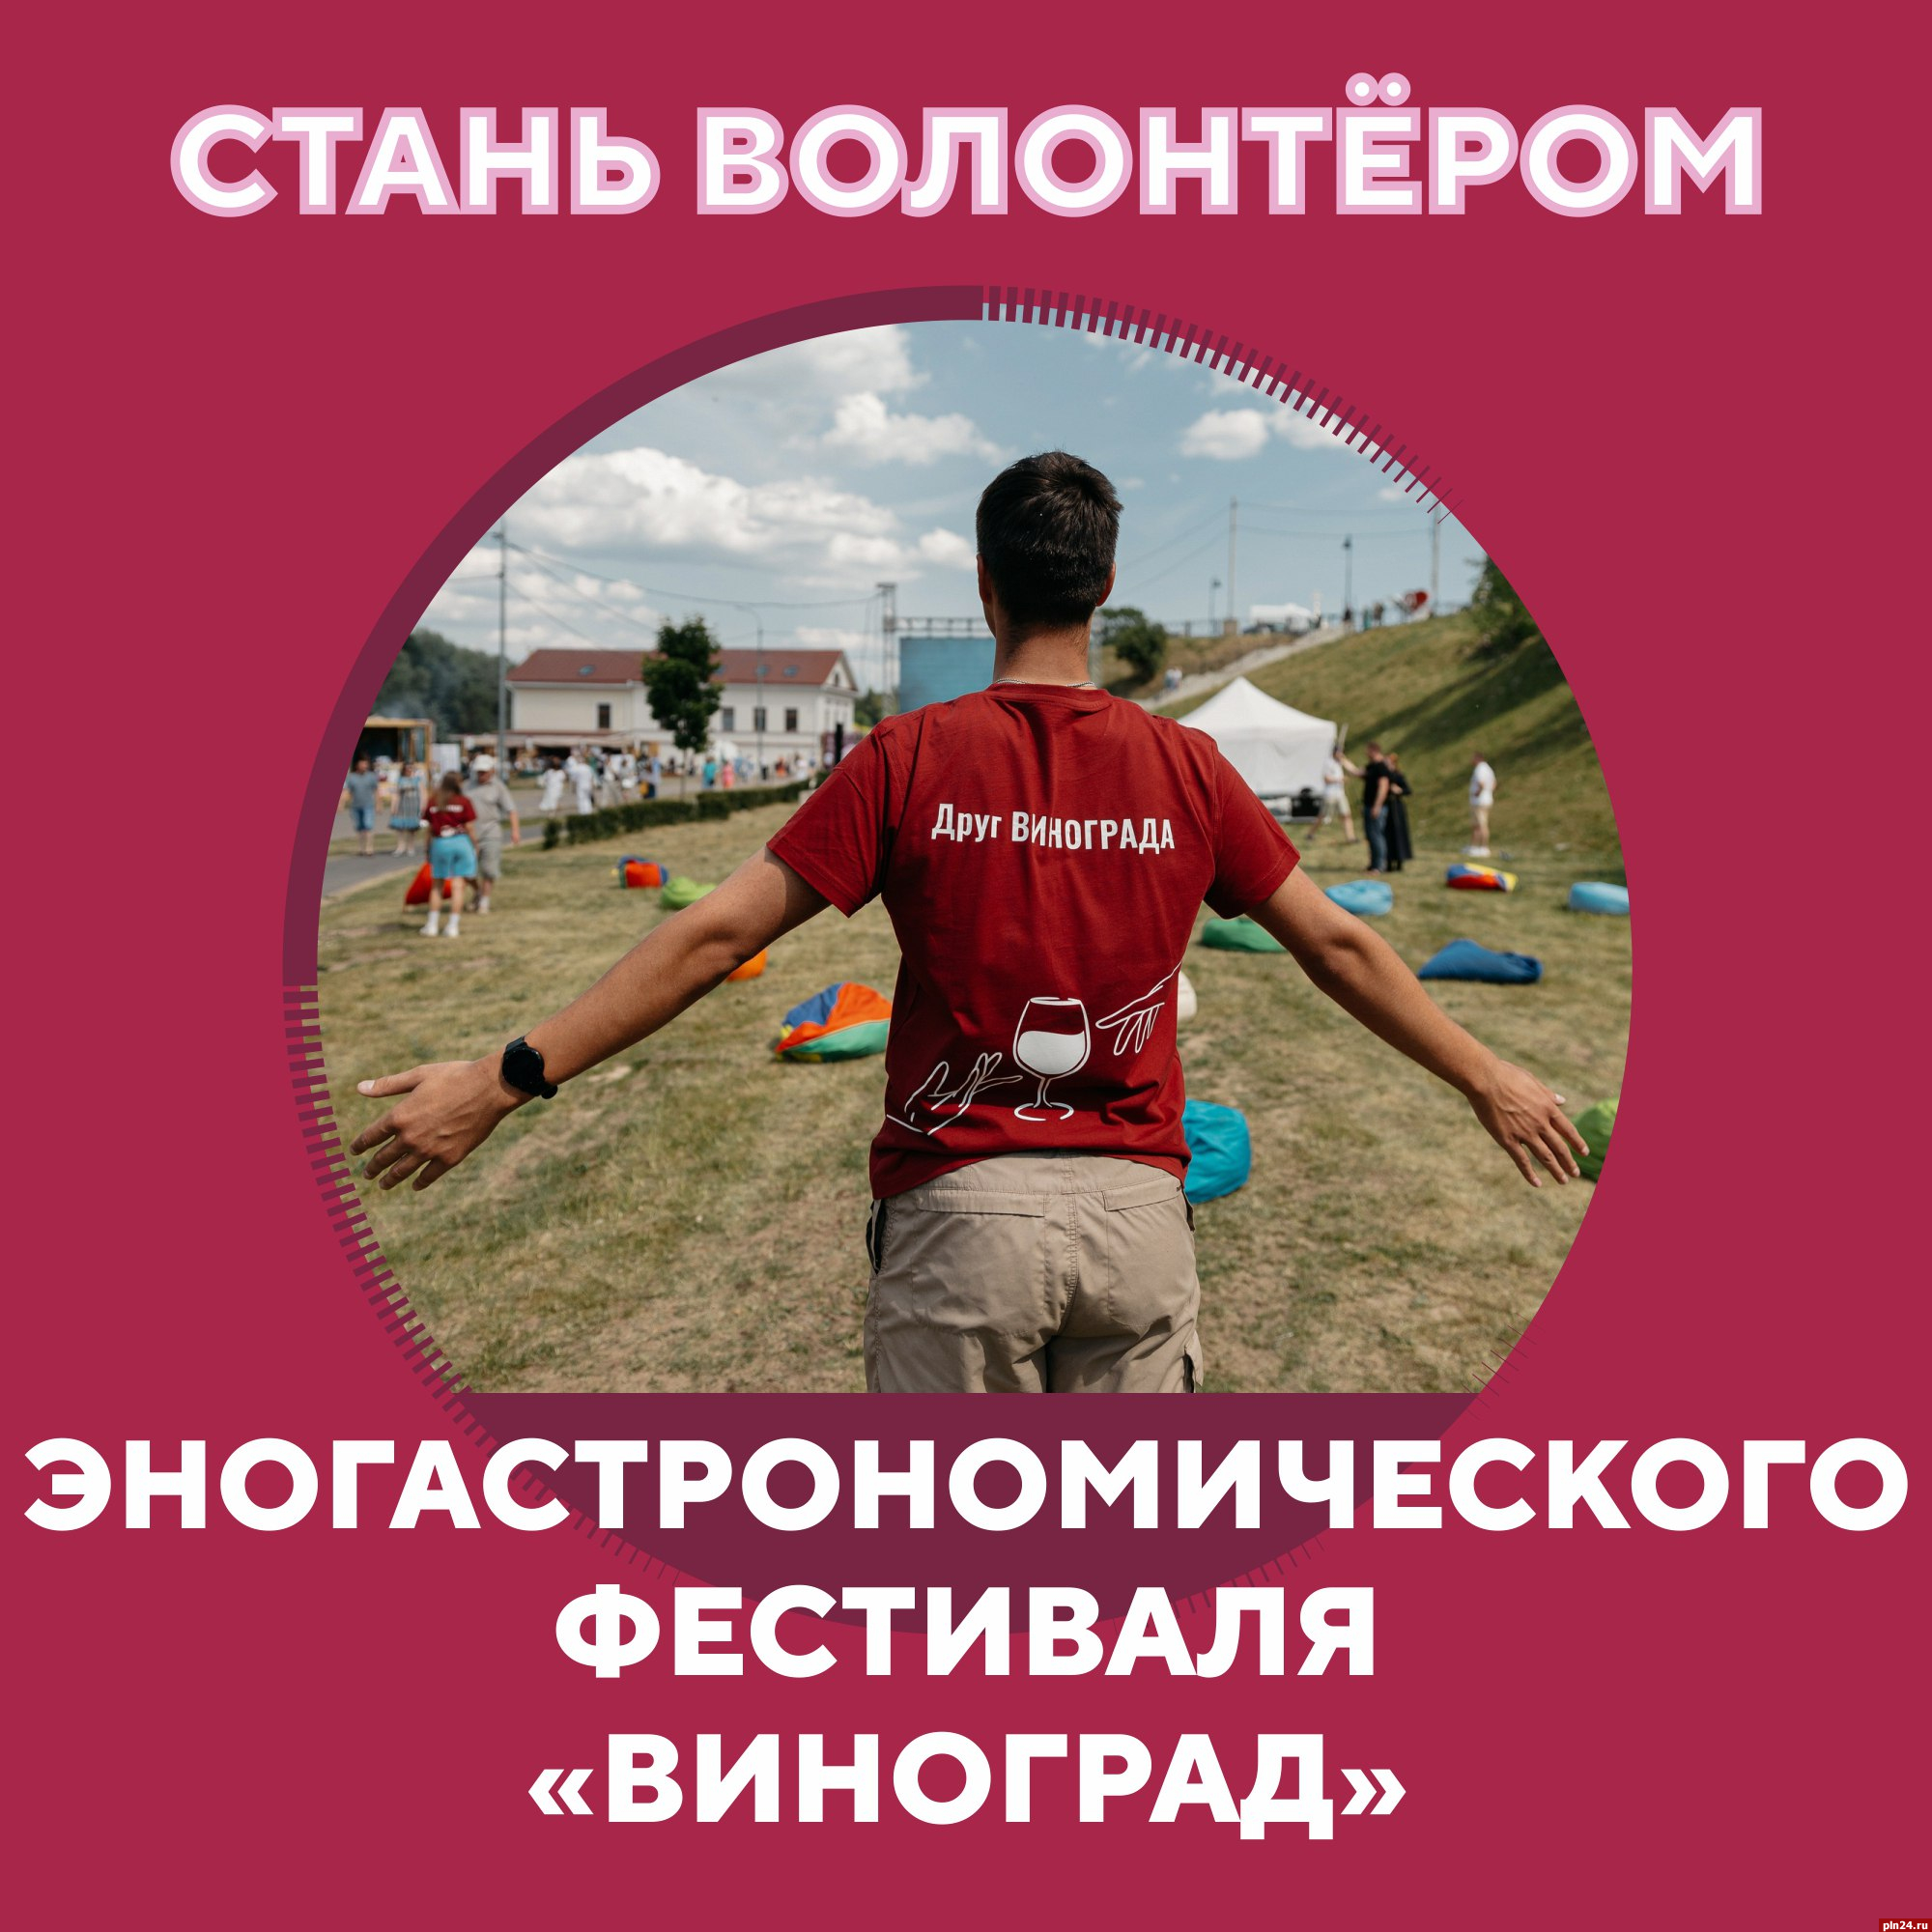 Стать волонтёром эногастрономического фестиваля «Виноград» предлагают псковичам